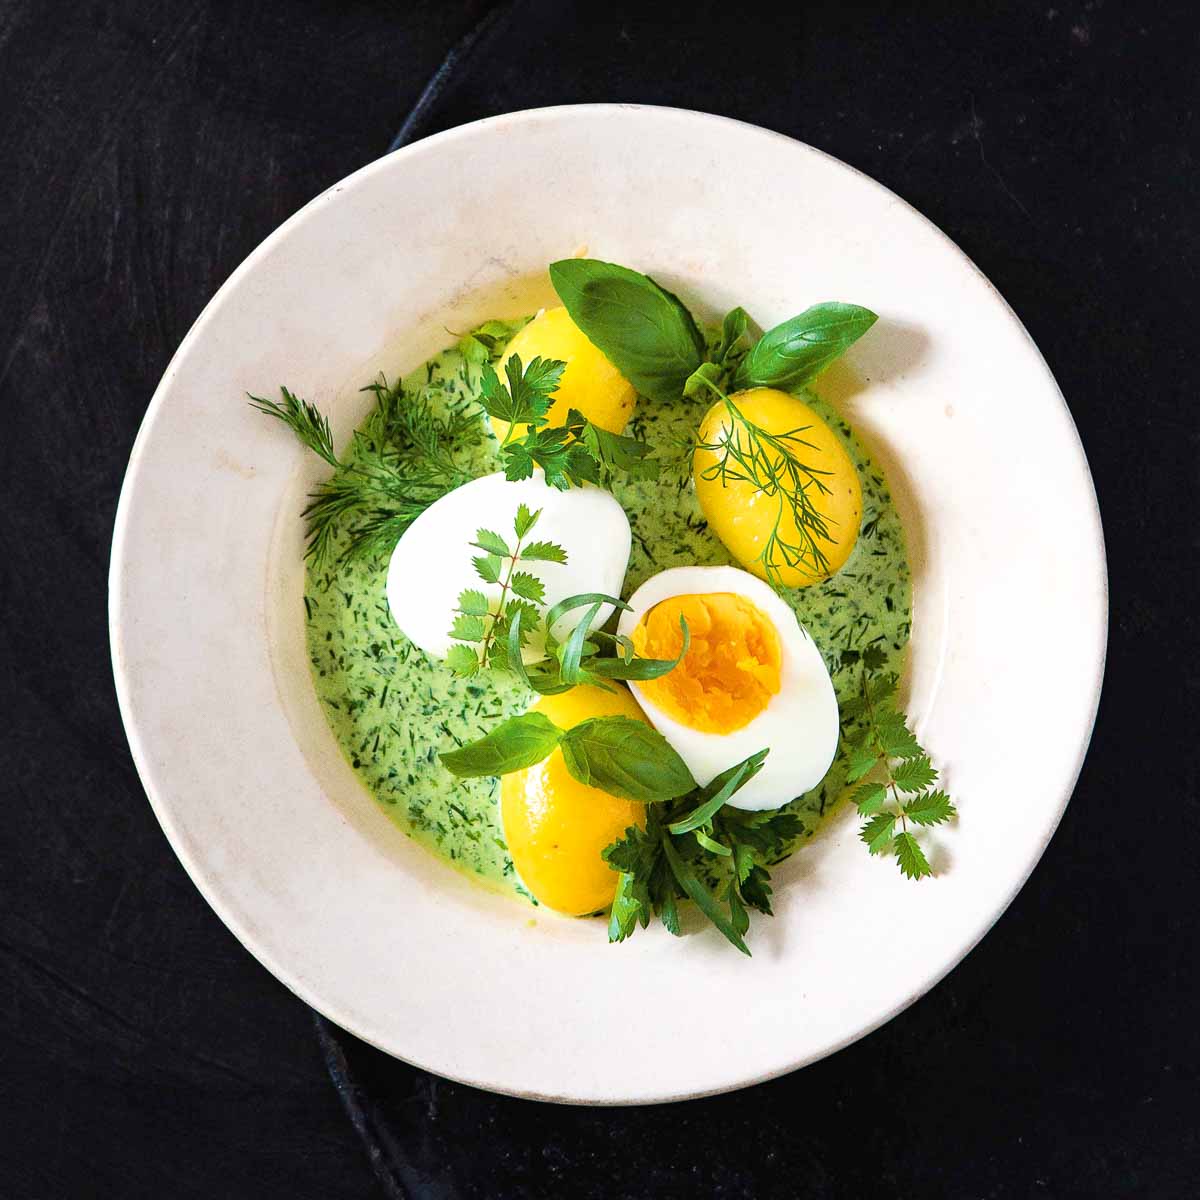 Rezept für Eier mit grüner Soße von Stevan Paul | CREME GUIDES